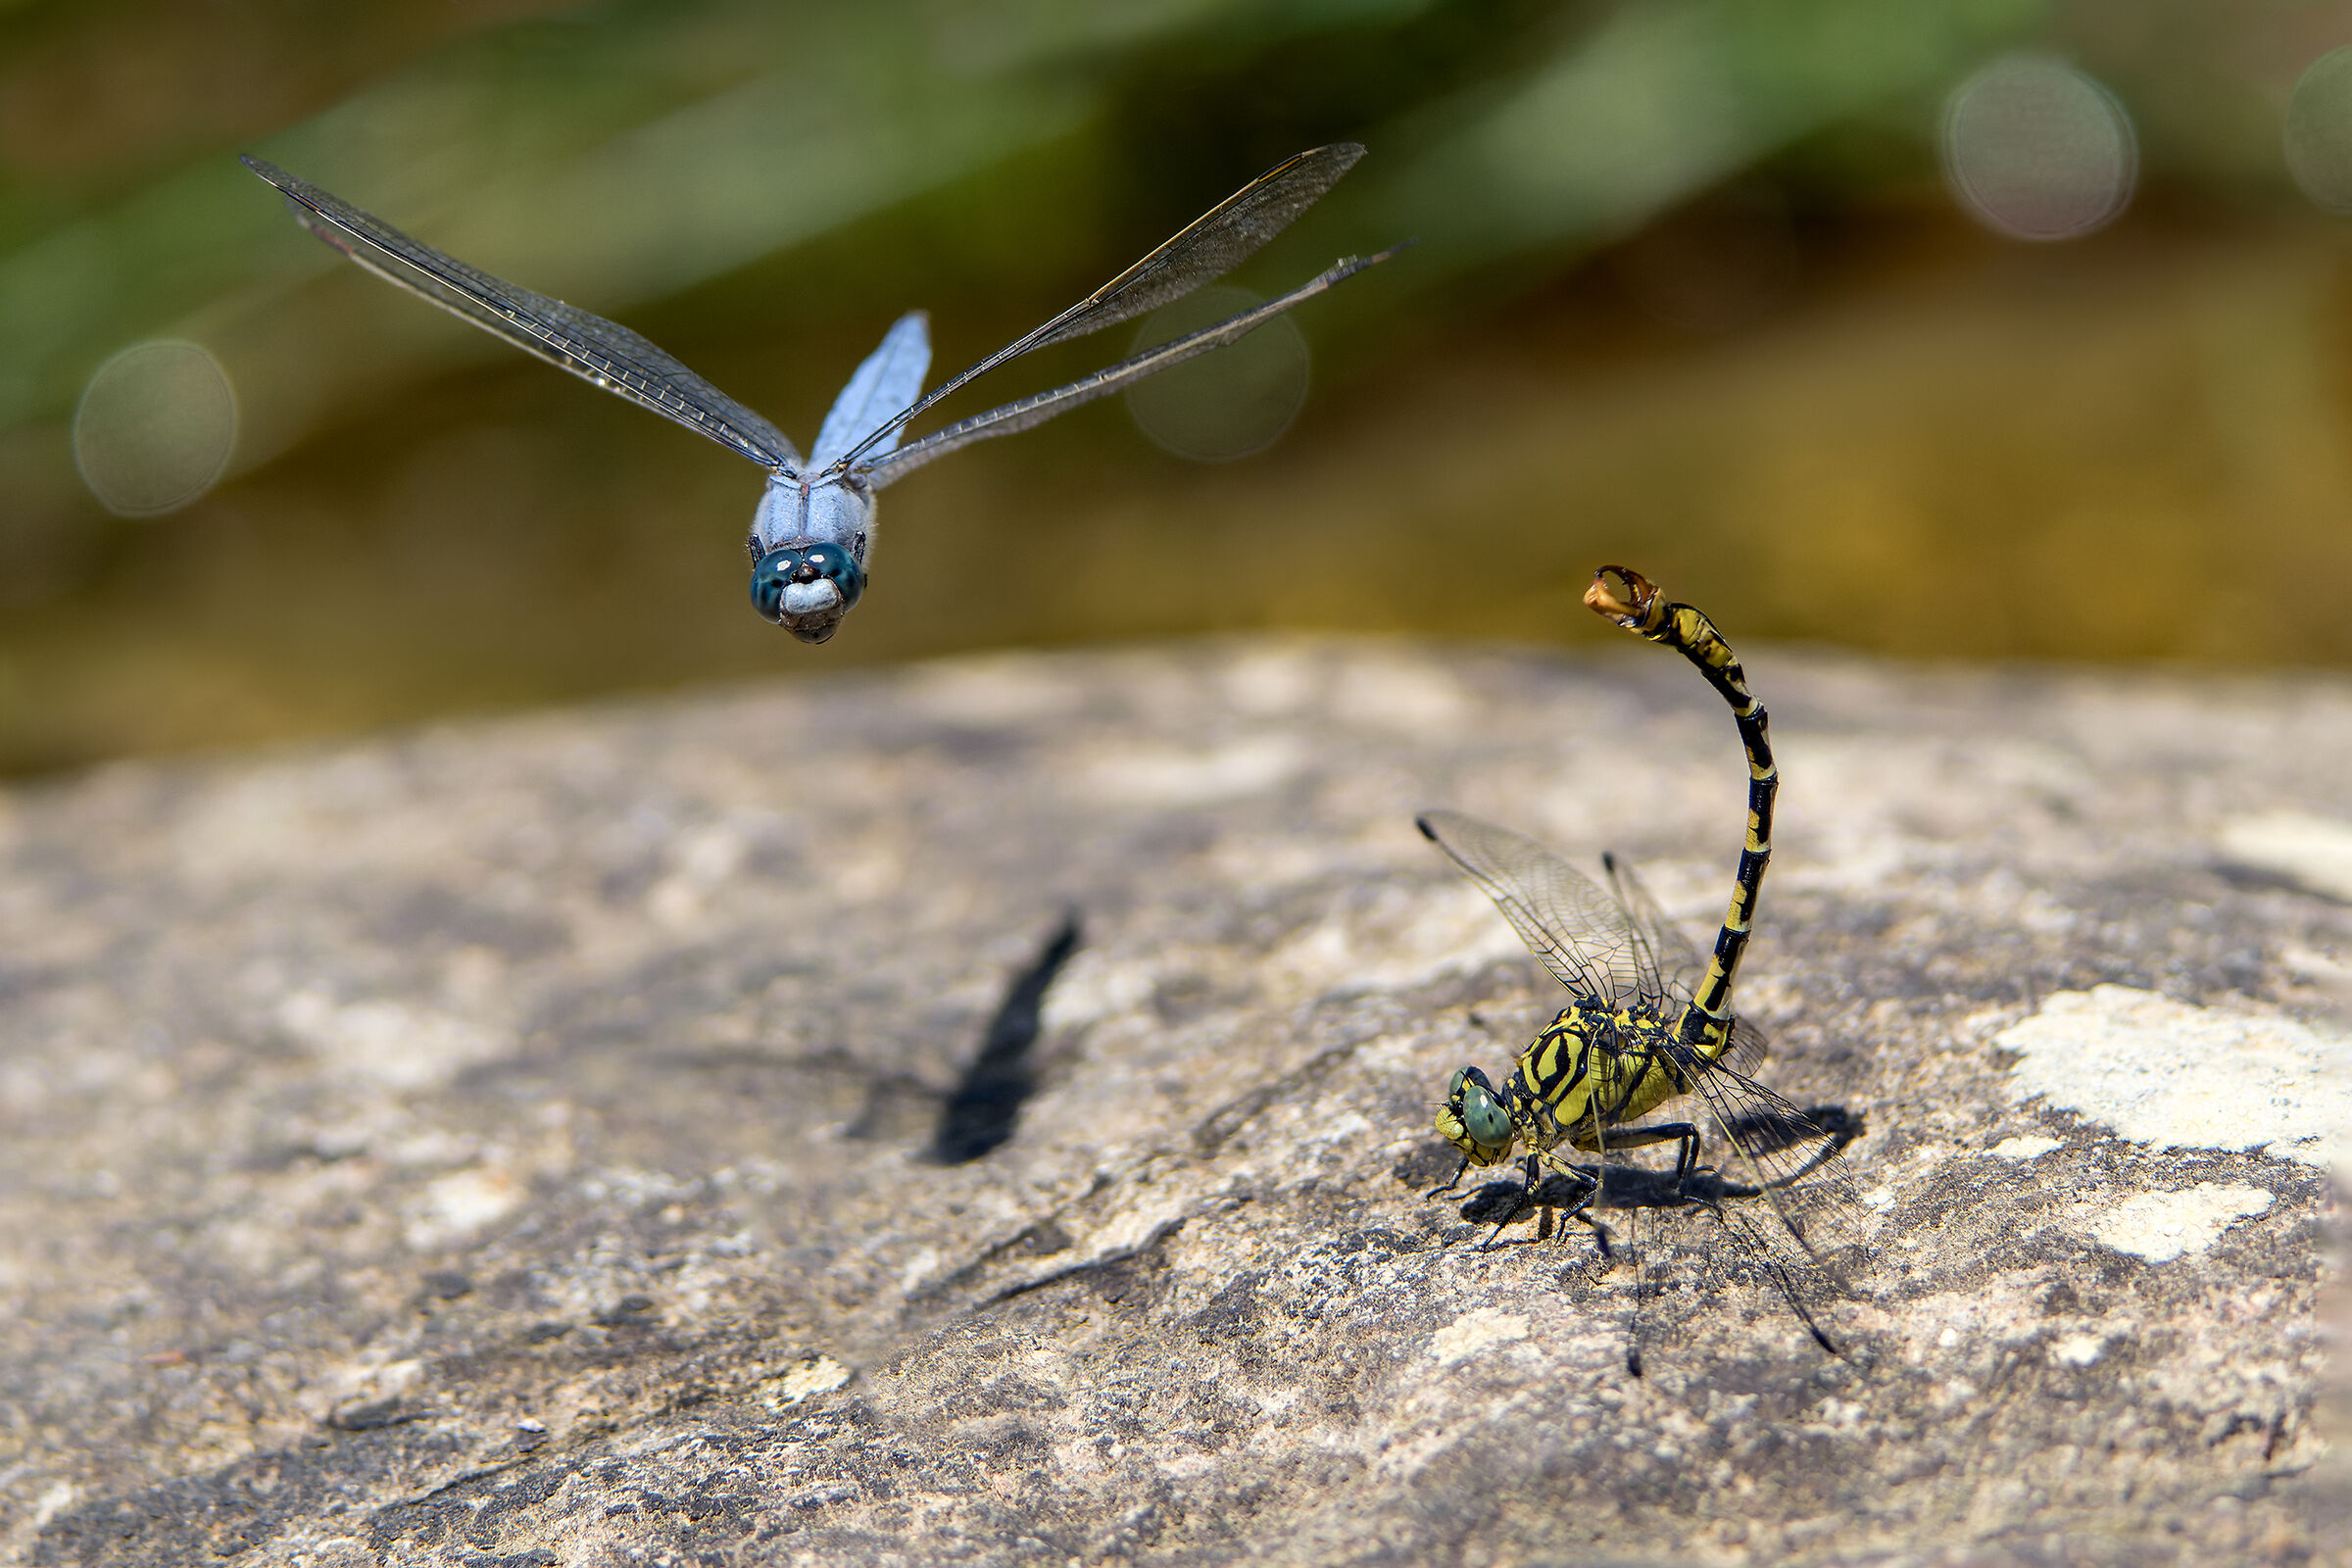 "Knock down!" - Threats between dragonflies...